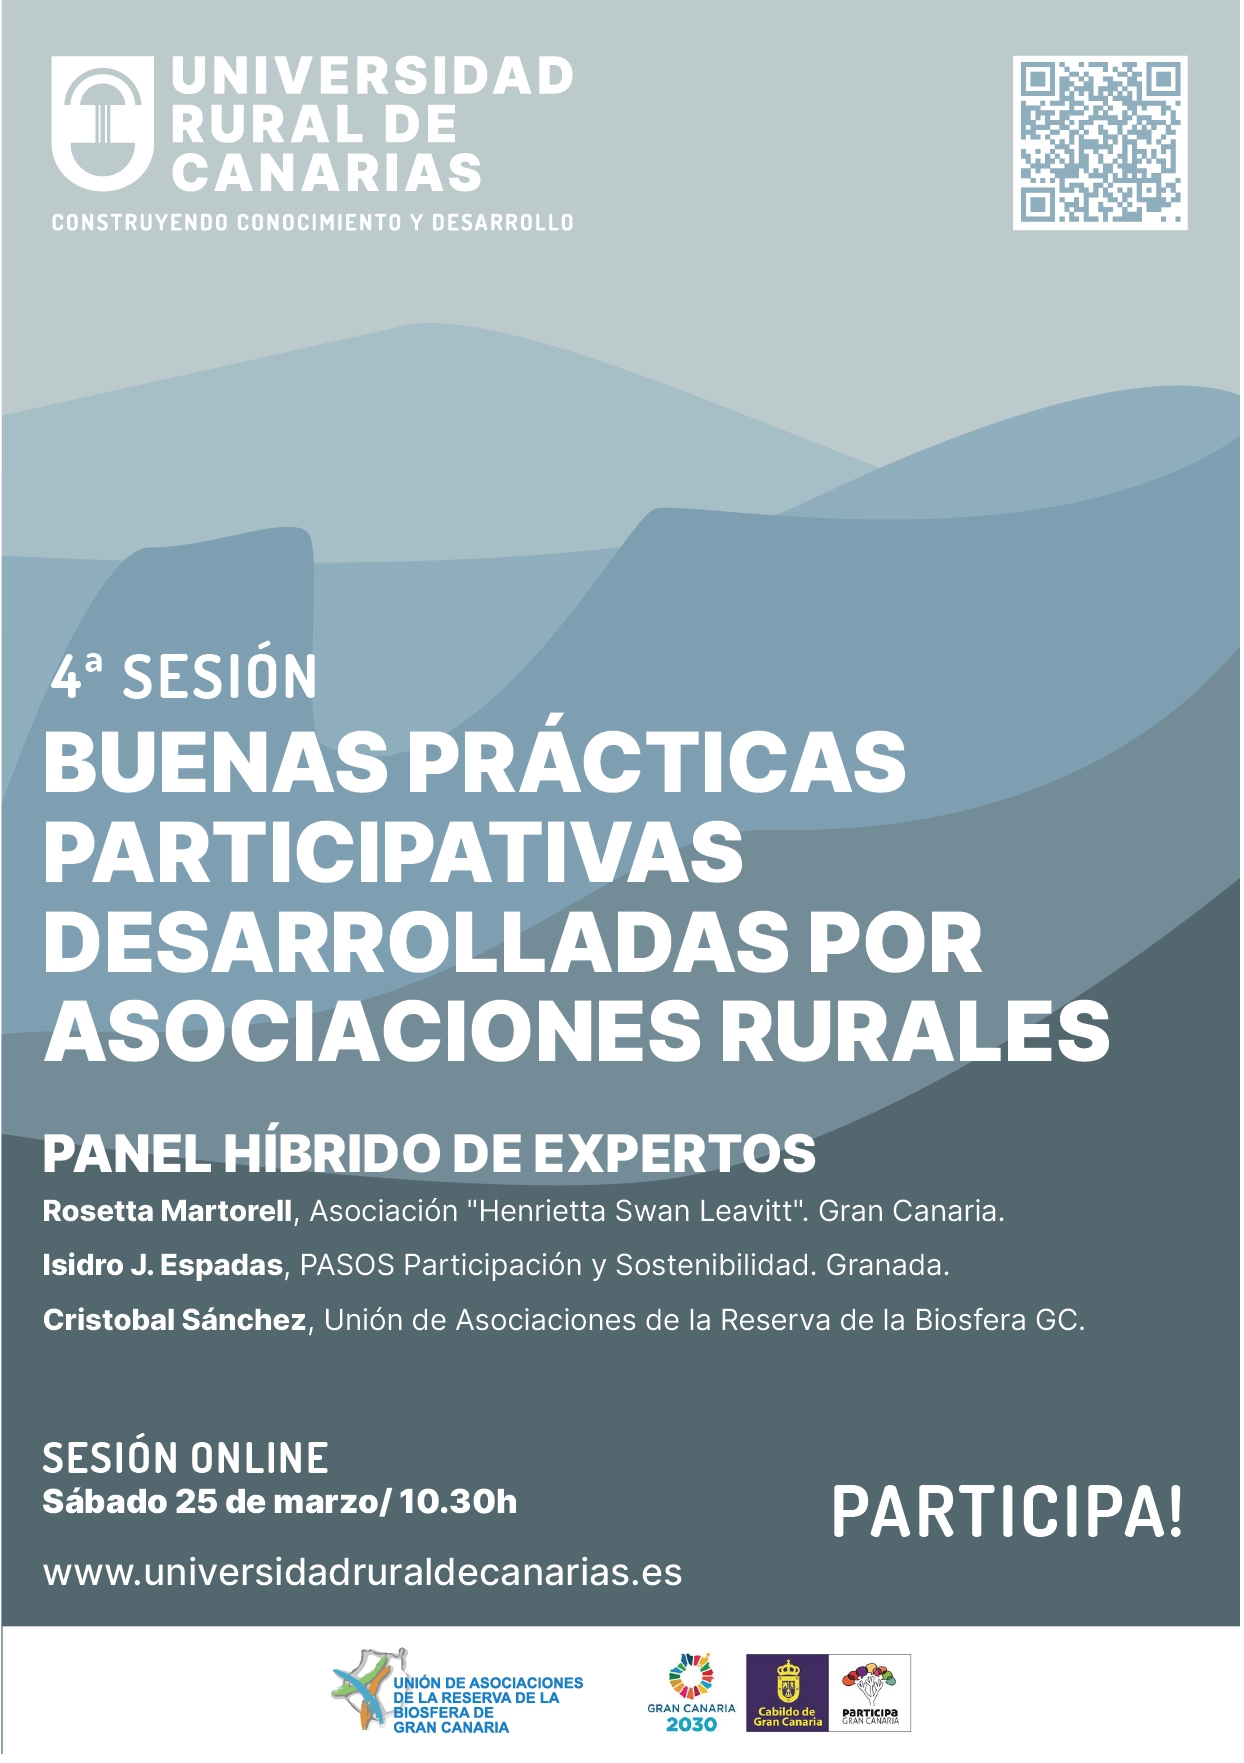 Buenas prácticas participativas desarrolladas por asociaciones rurales